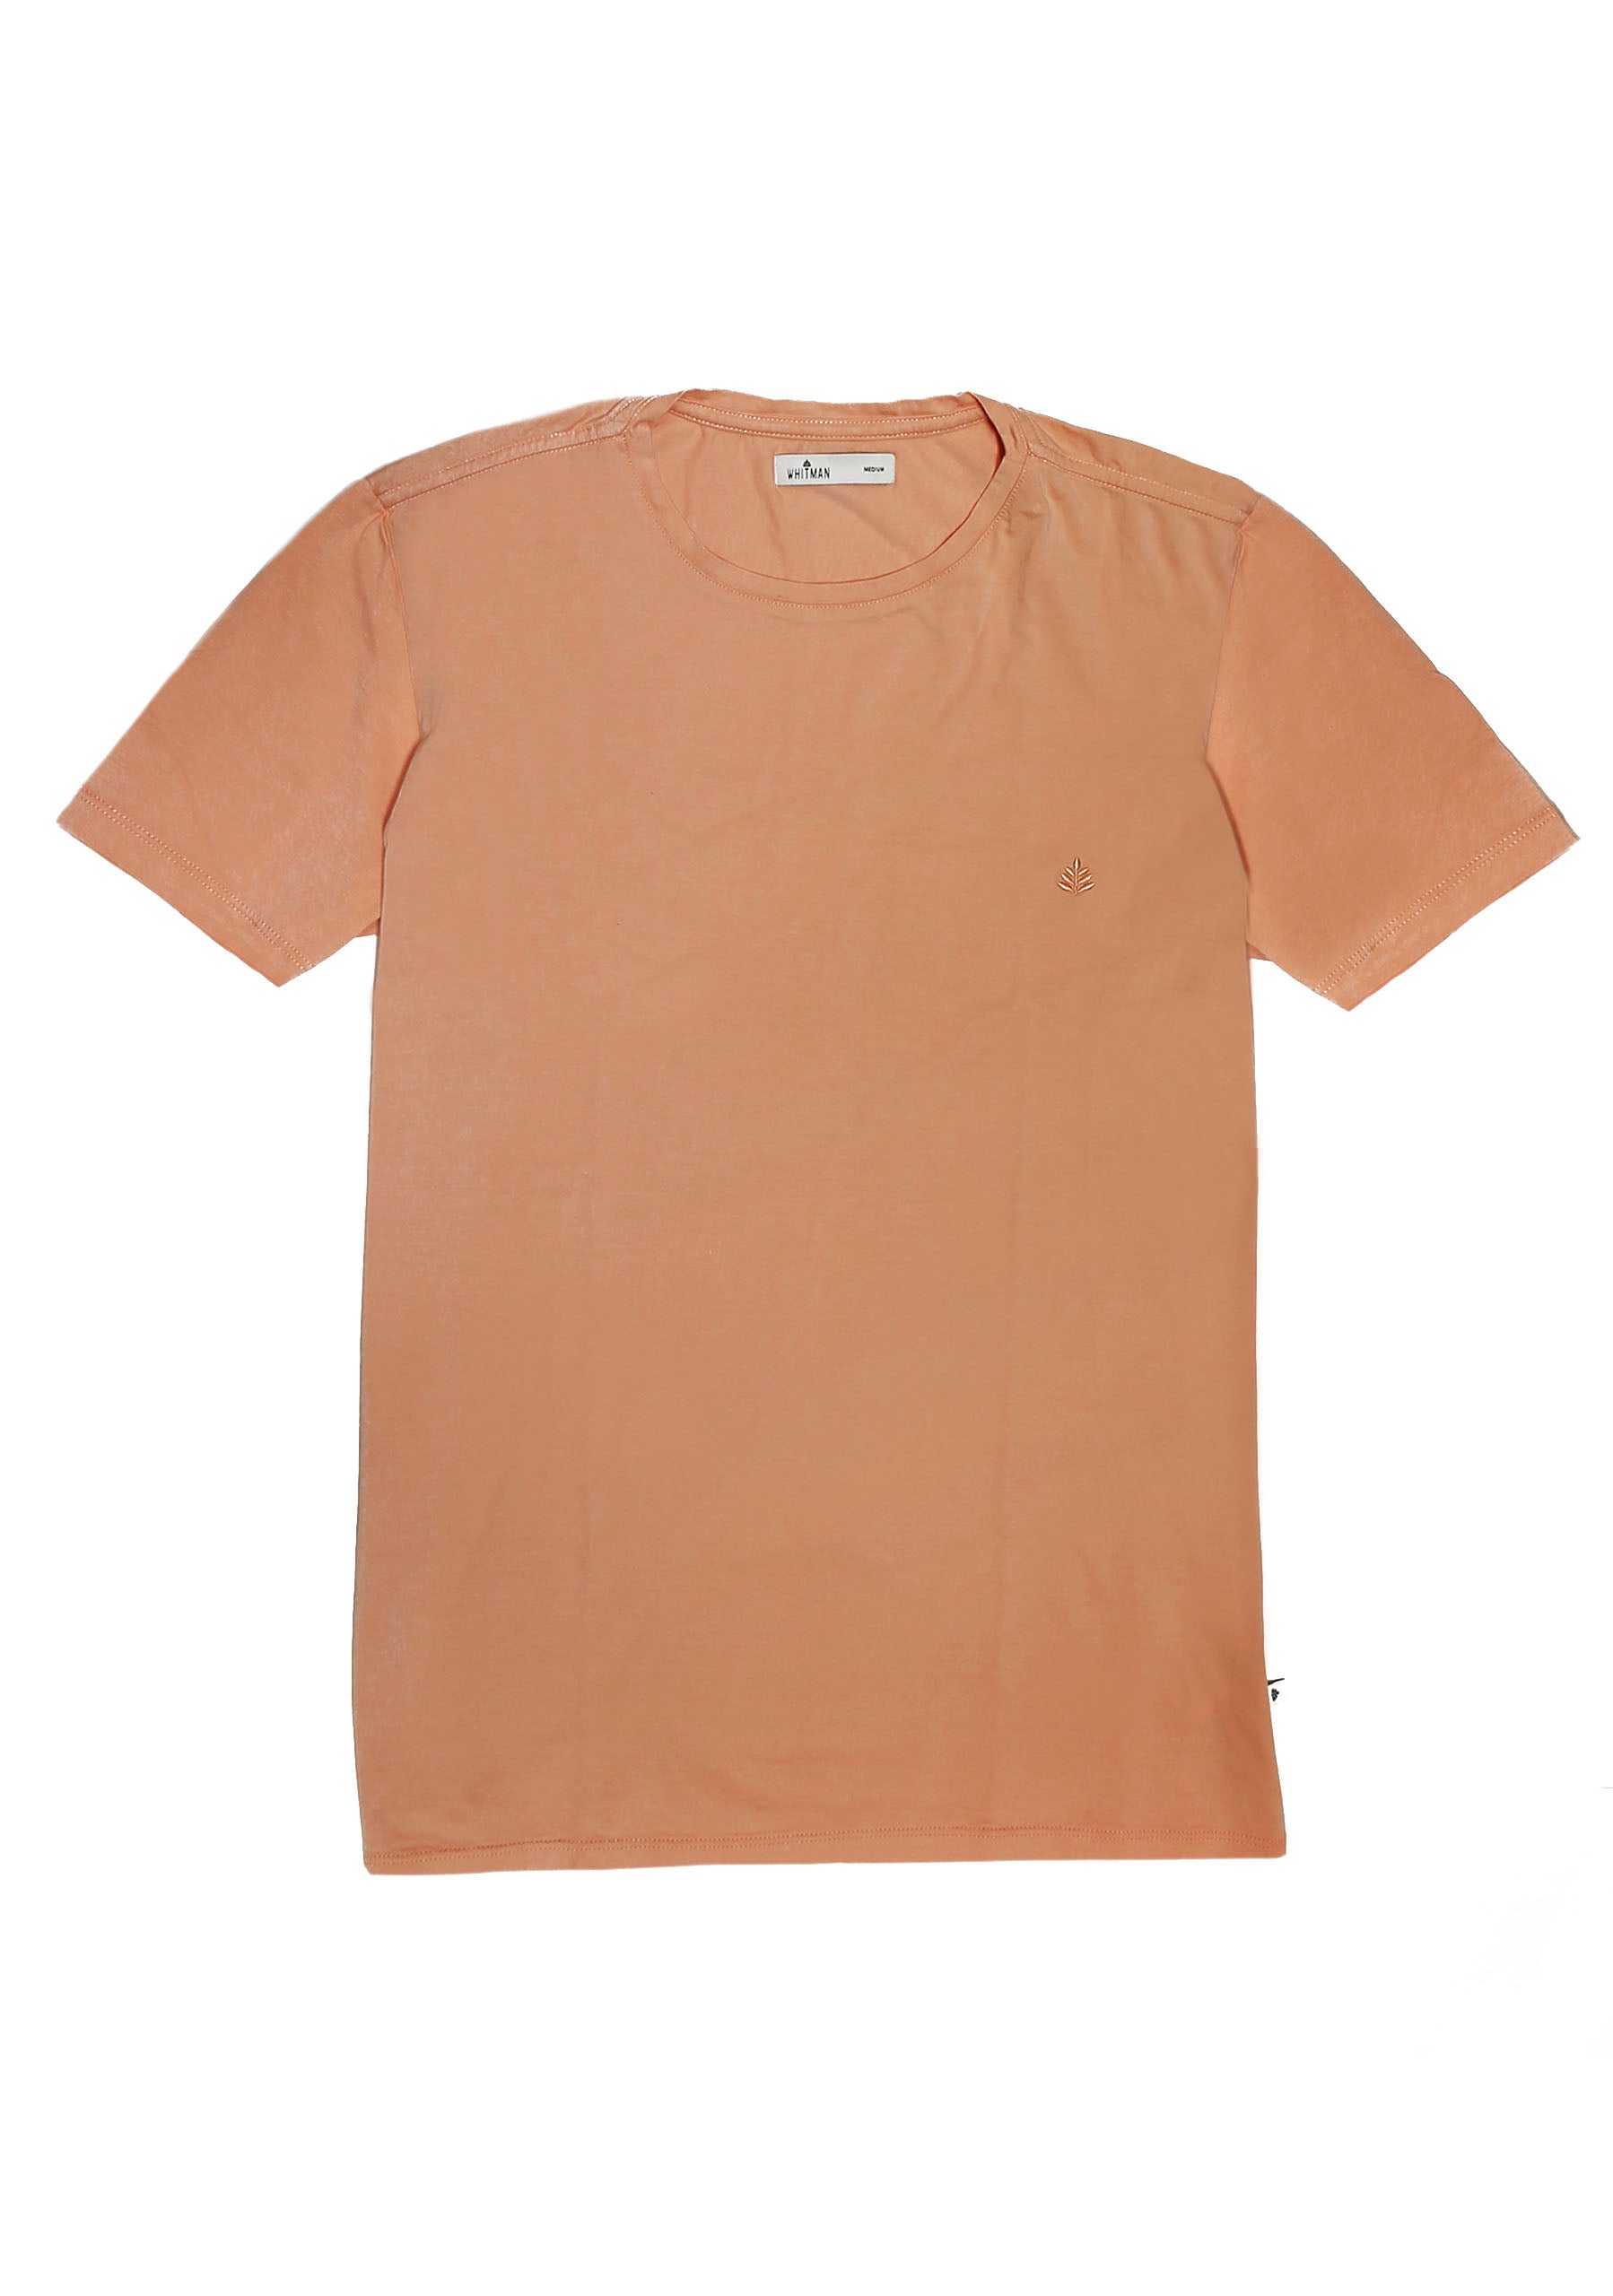 Peach T-Shirt